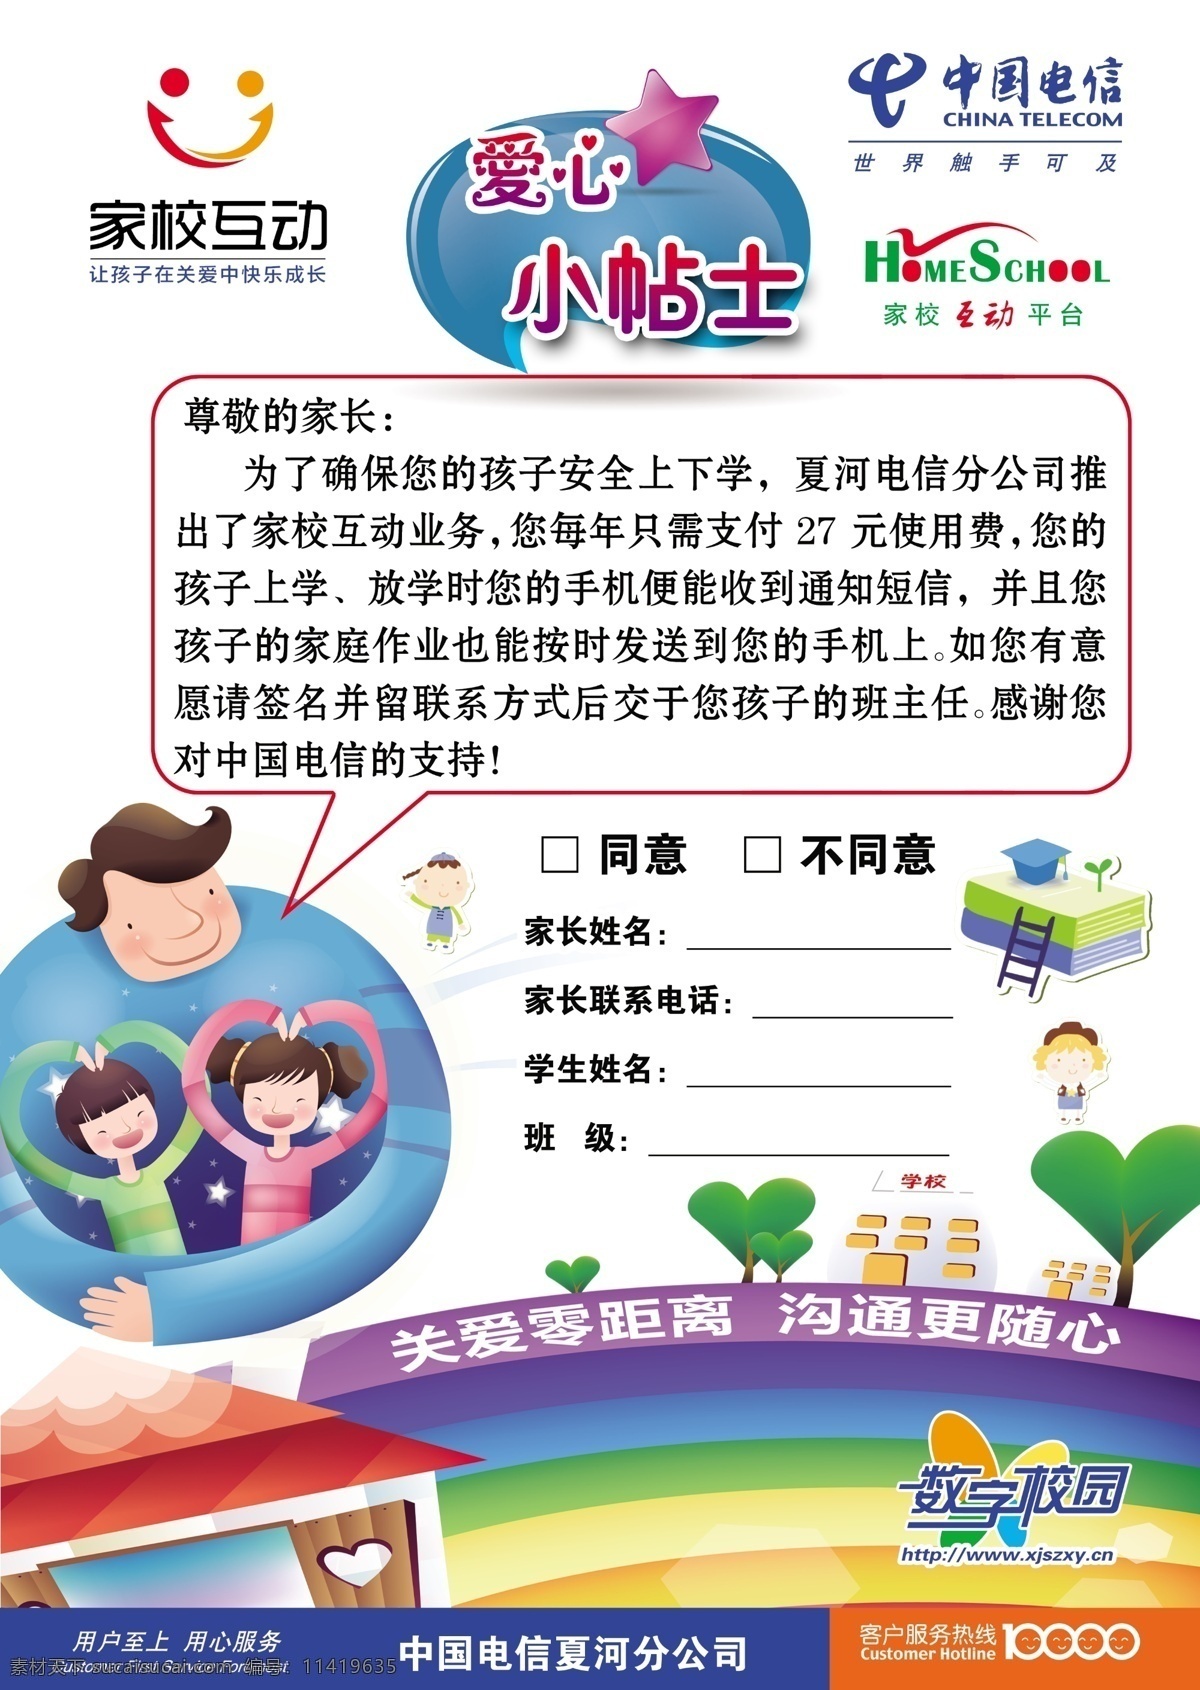 家校互动 模版下载 爱心小贴士 中国电信 校务通 卡通素材 dm宣传单 广告设计模板 源文件